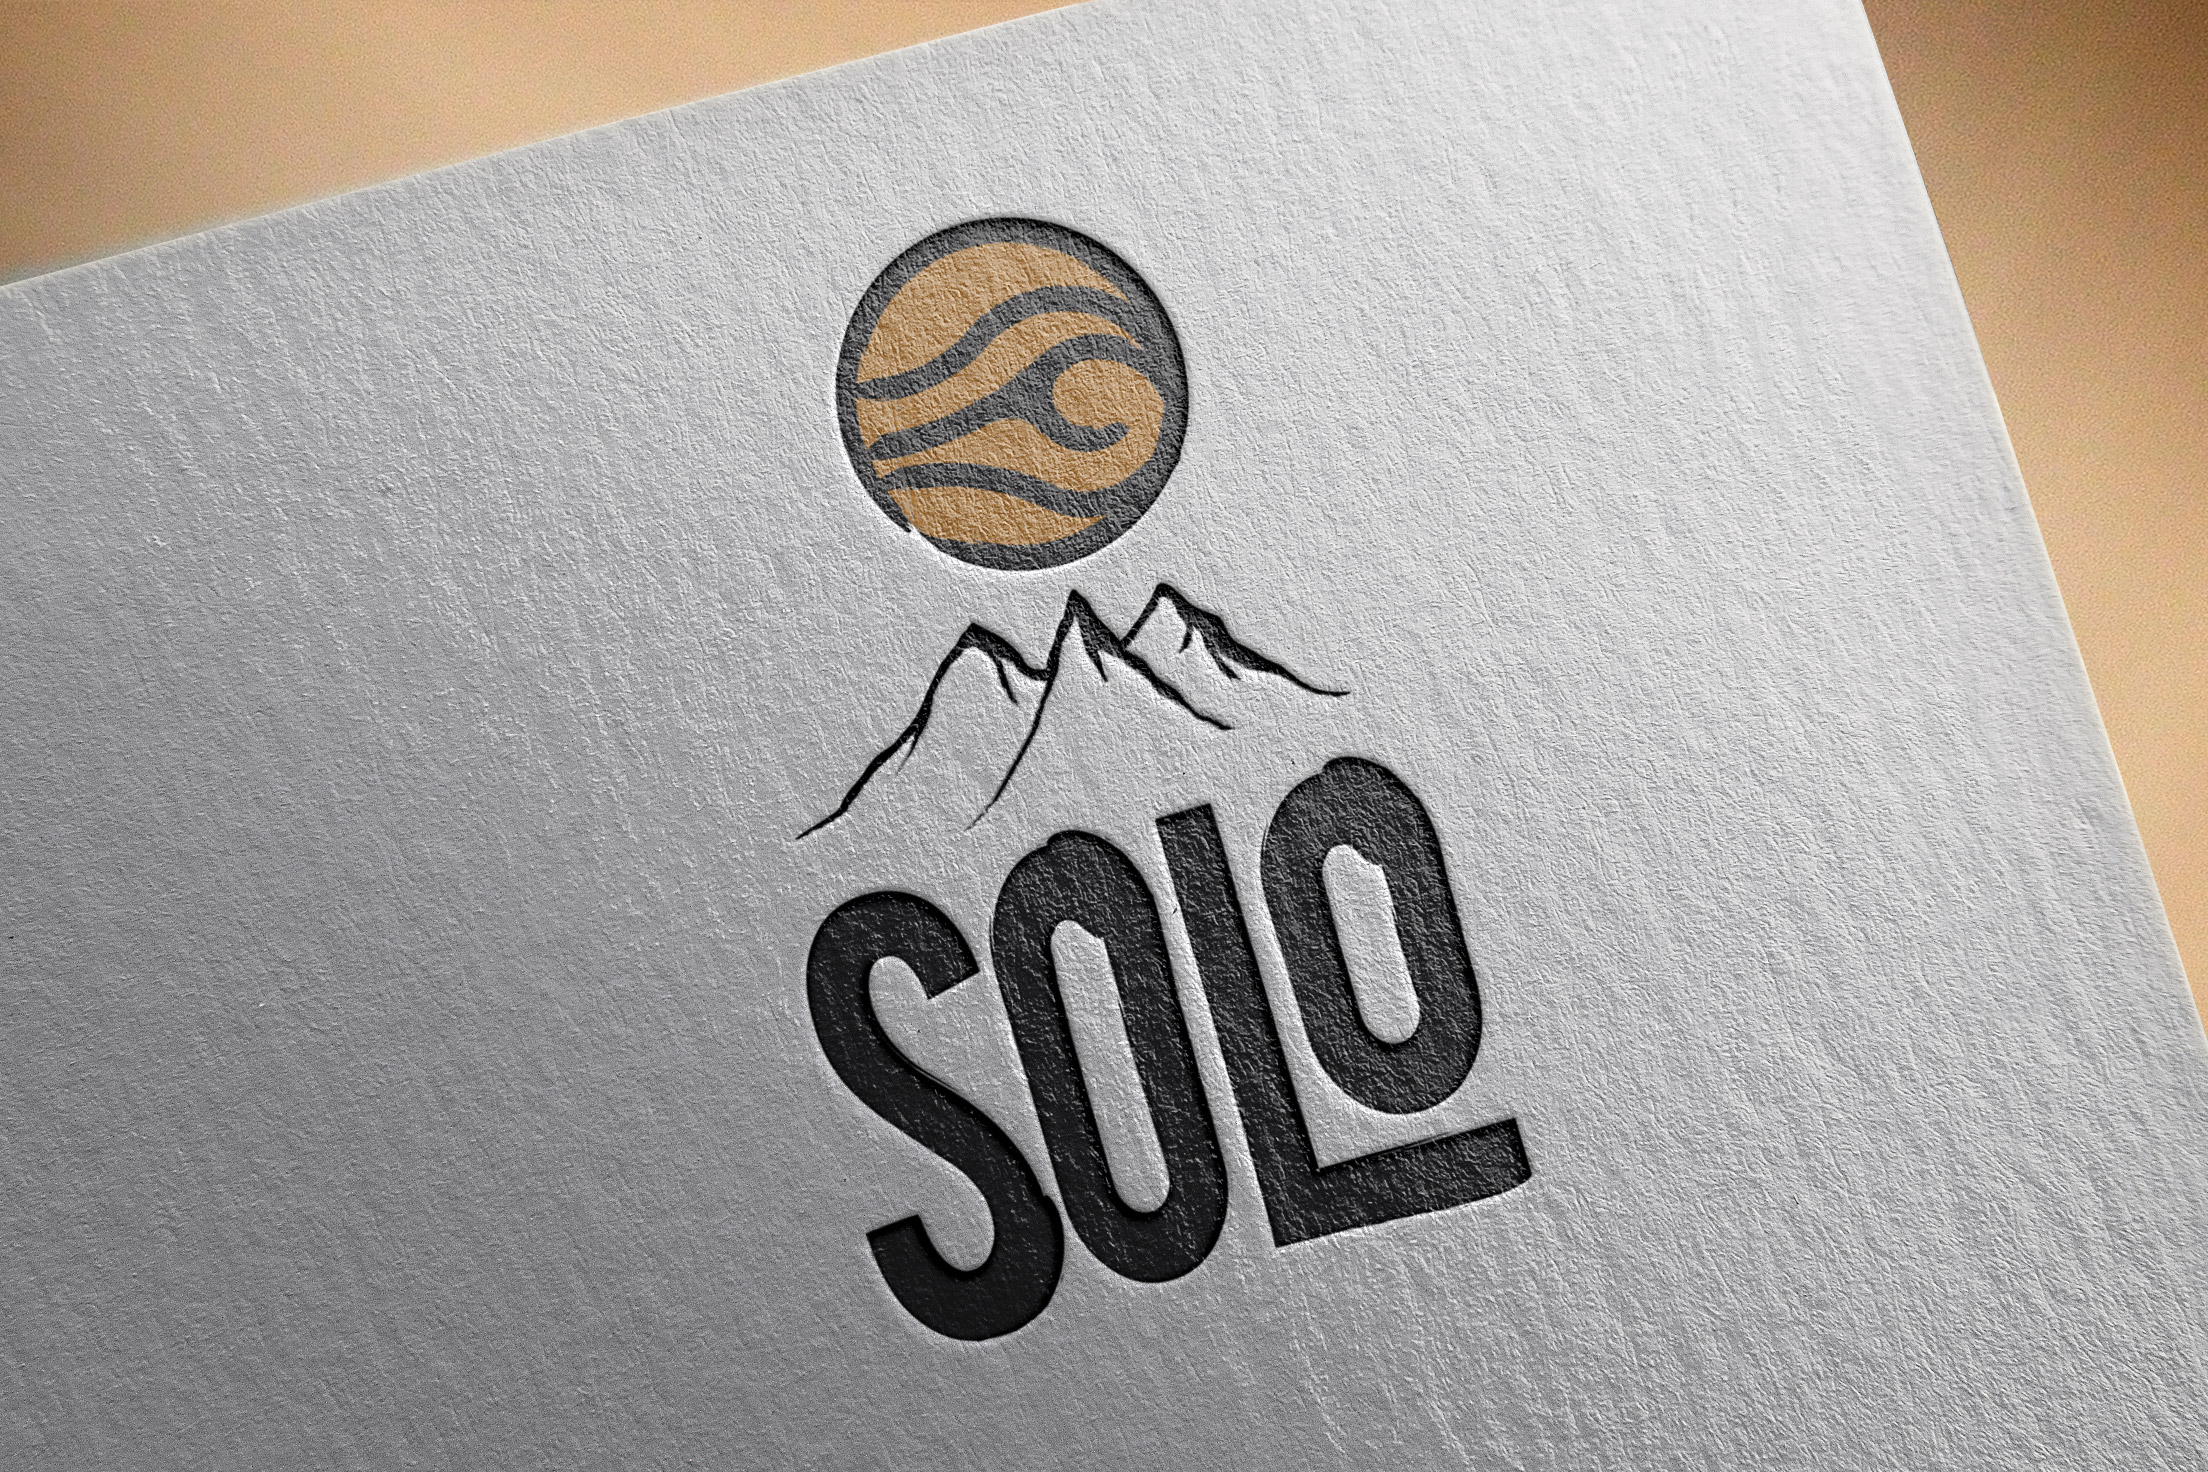 Realizzazione grafica Logo Solo pittogramma ad occhio|sole con profilo nero ed interno mazzone|arancio sopra il profilo di una montagna con font bold del naming SOLO su fondo bianco